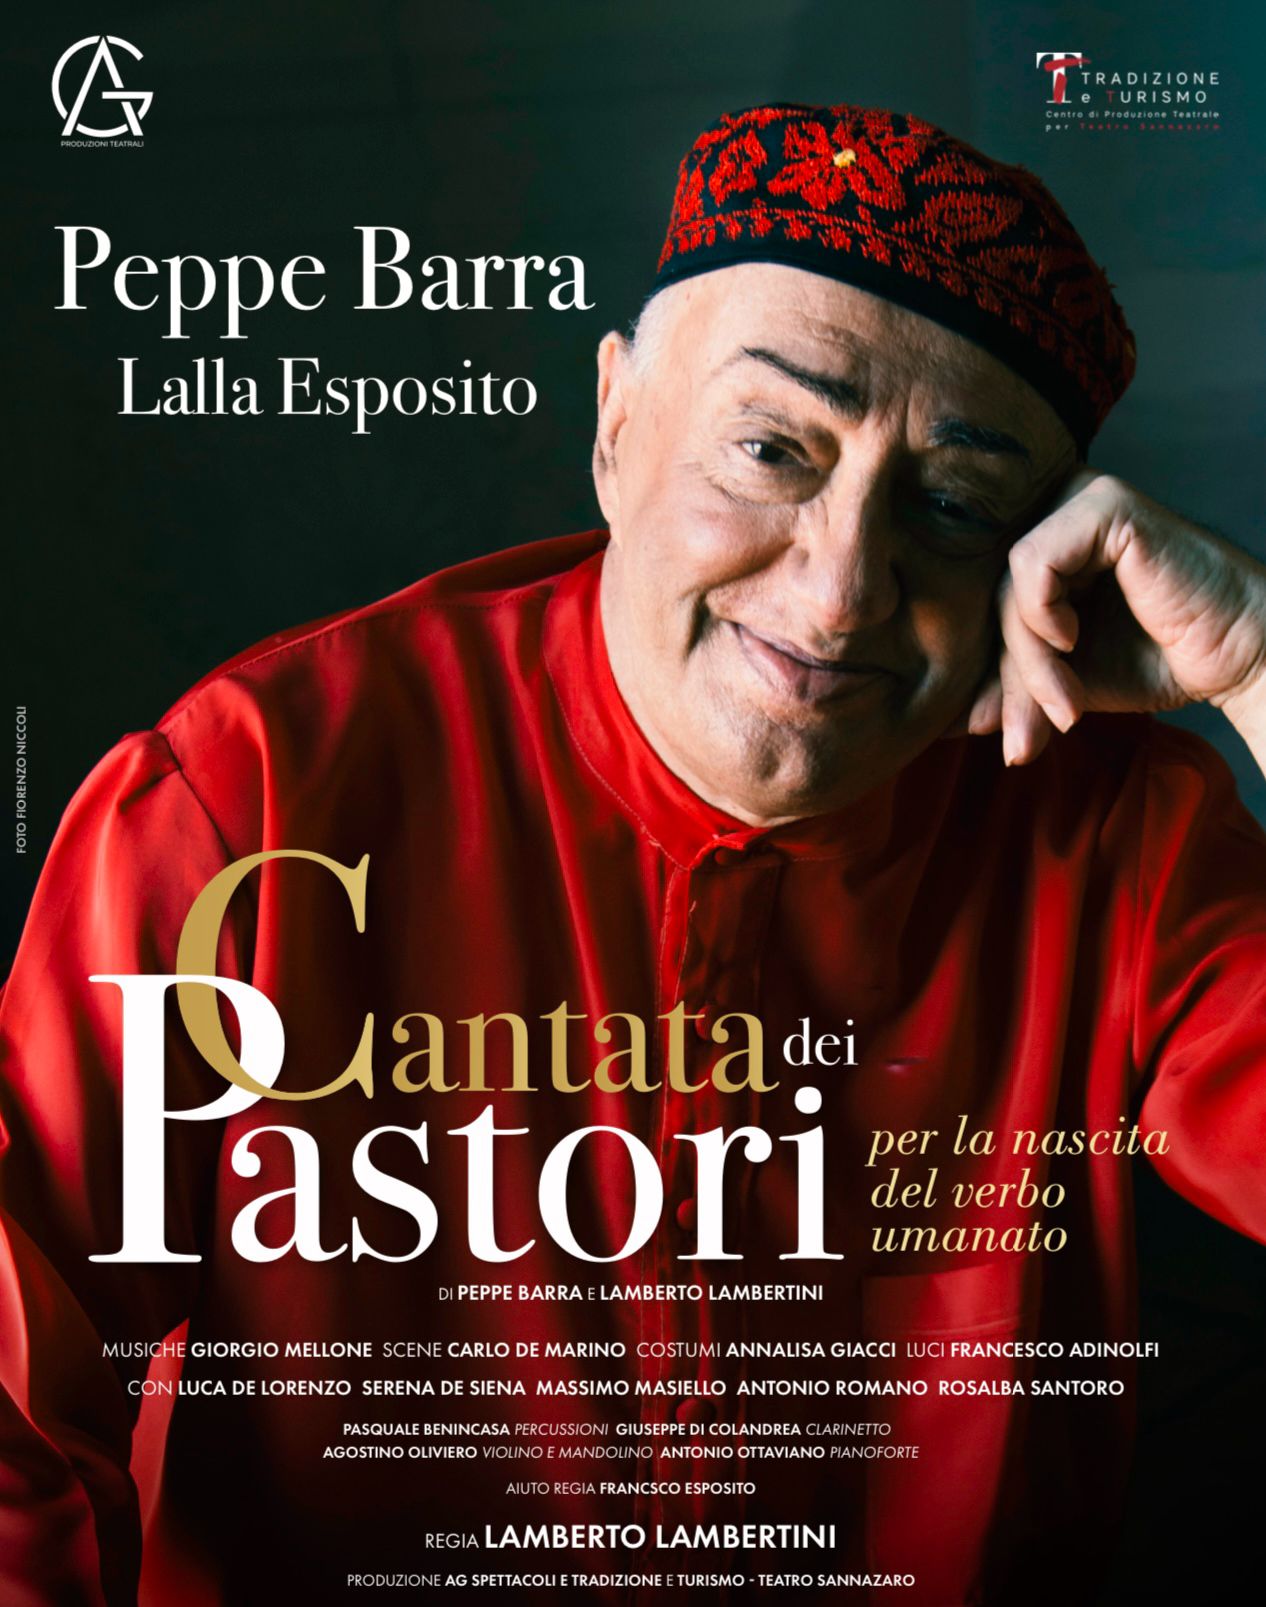 Battipaglia: “La cantata dei pastori” tra risate e sacralità, Peppe Barra a Teatro Giuffré  